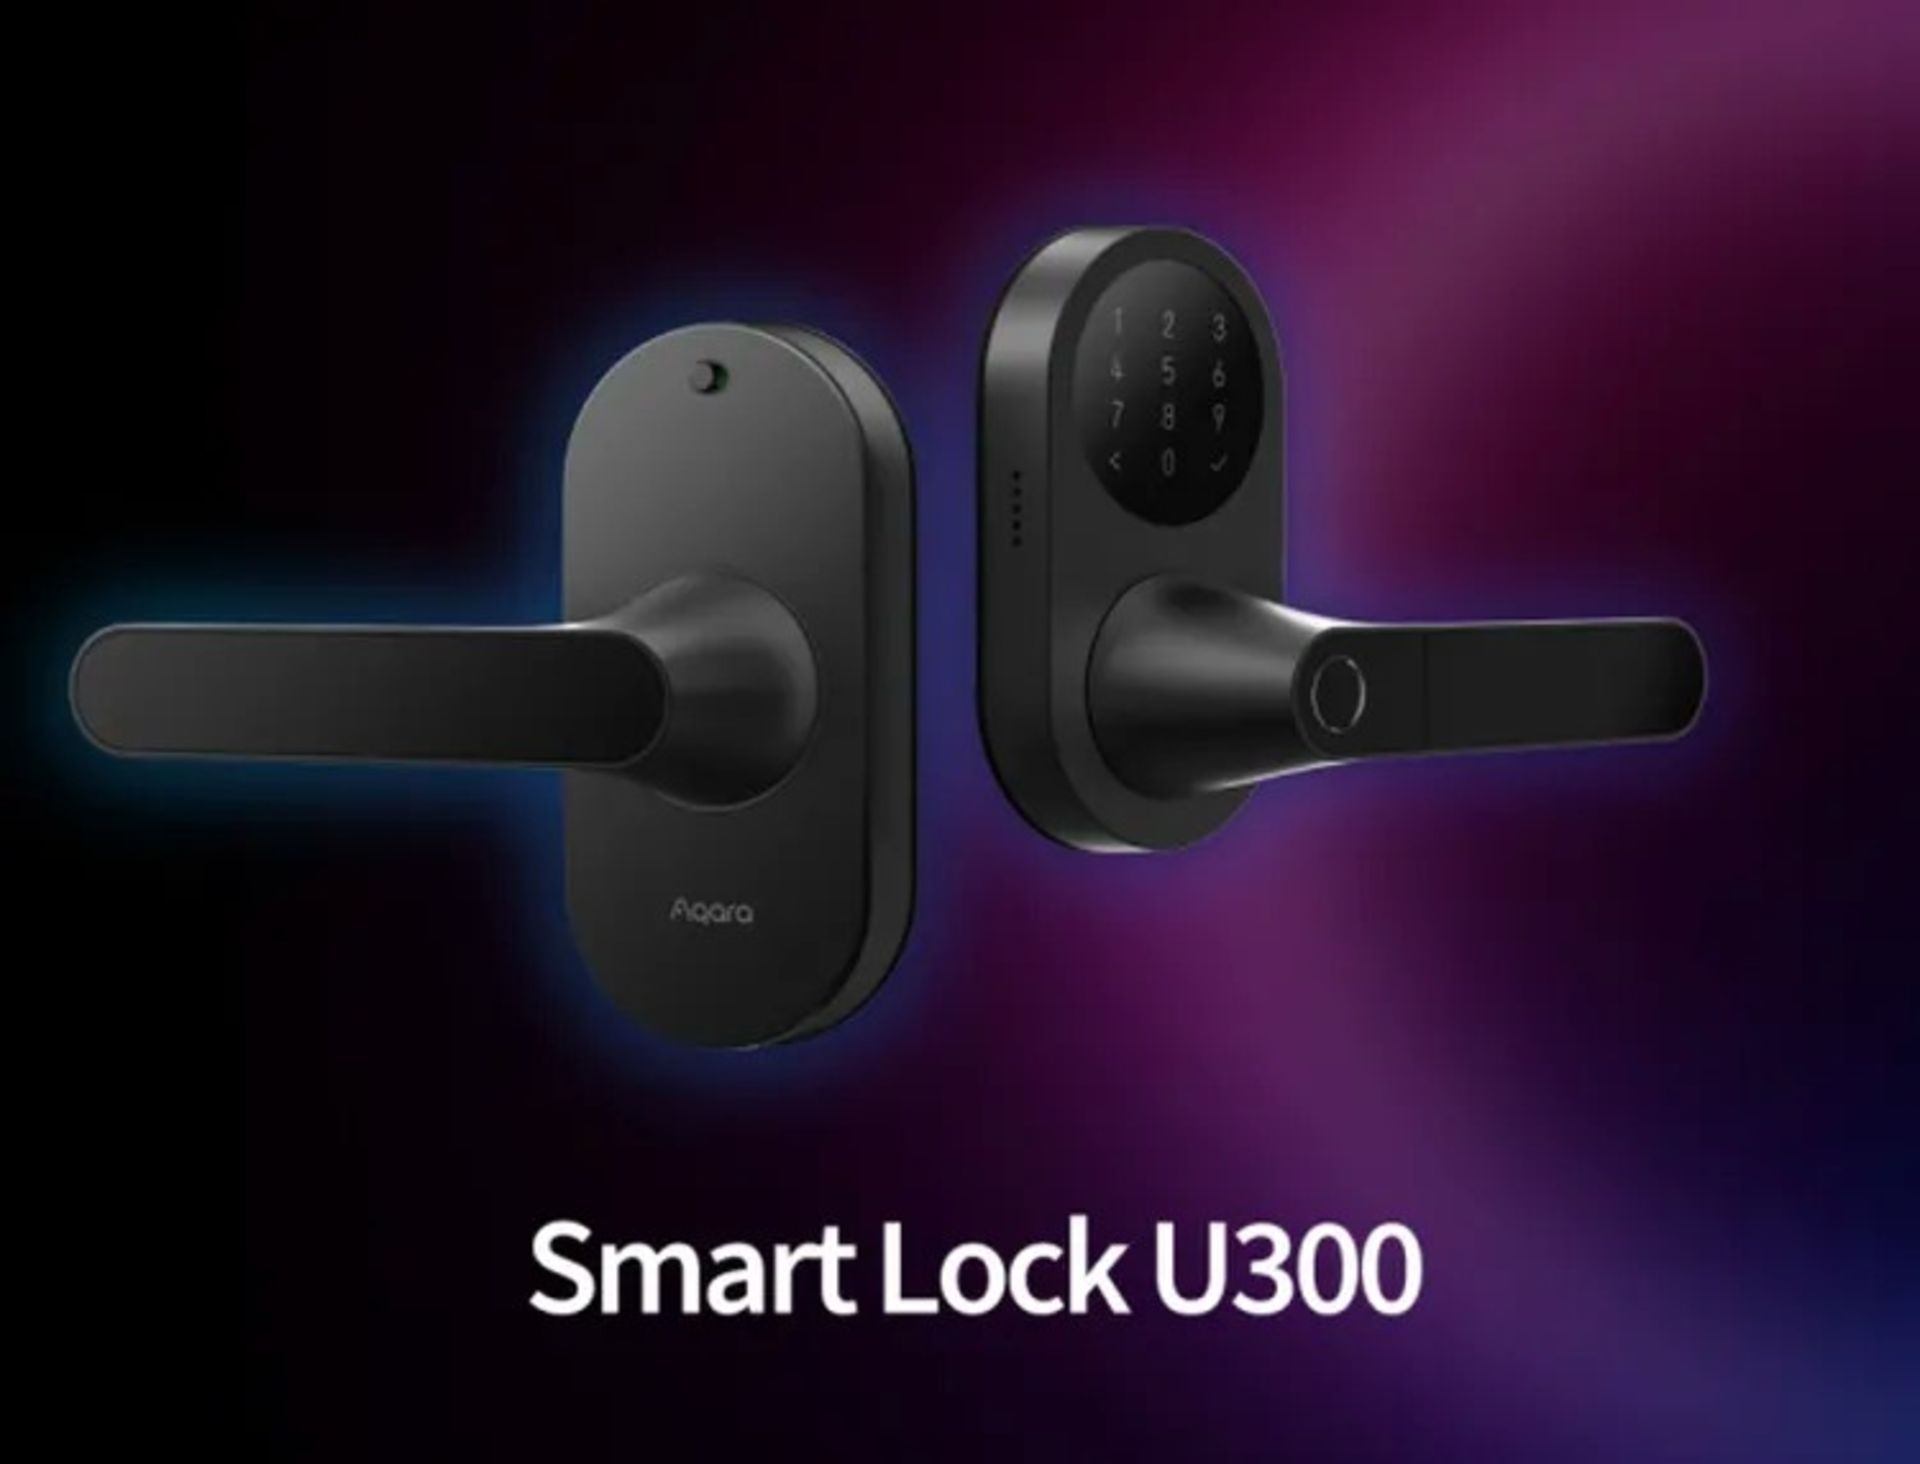 دو عدد Smart Lock U300 در کنار یکدیگر